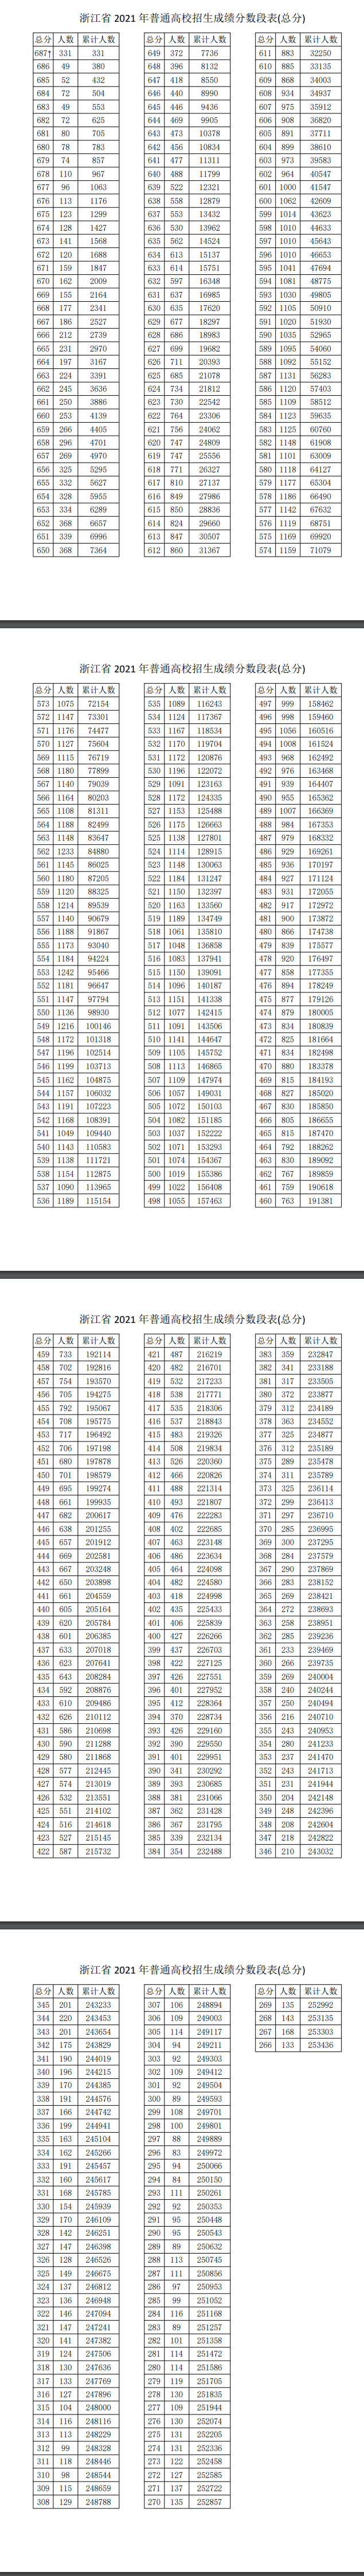 2022浙江高考一分一段表预估